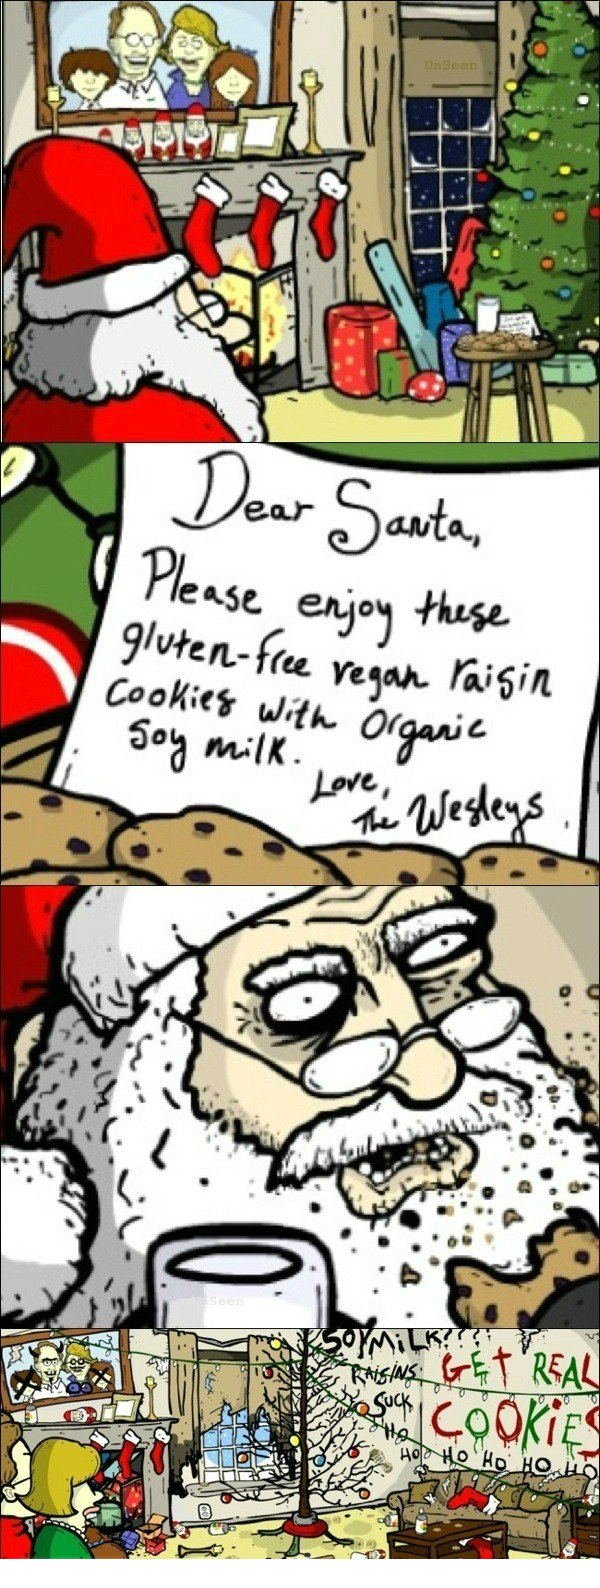 Don't mess with Santa